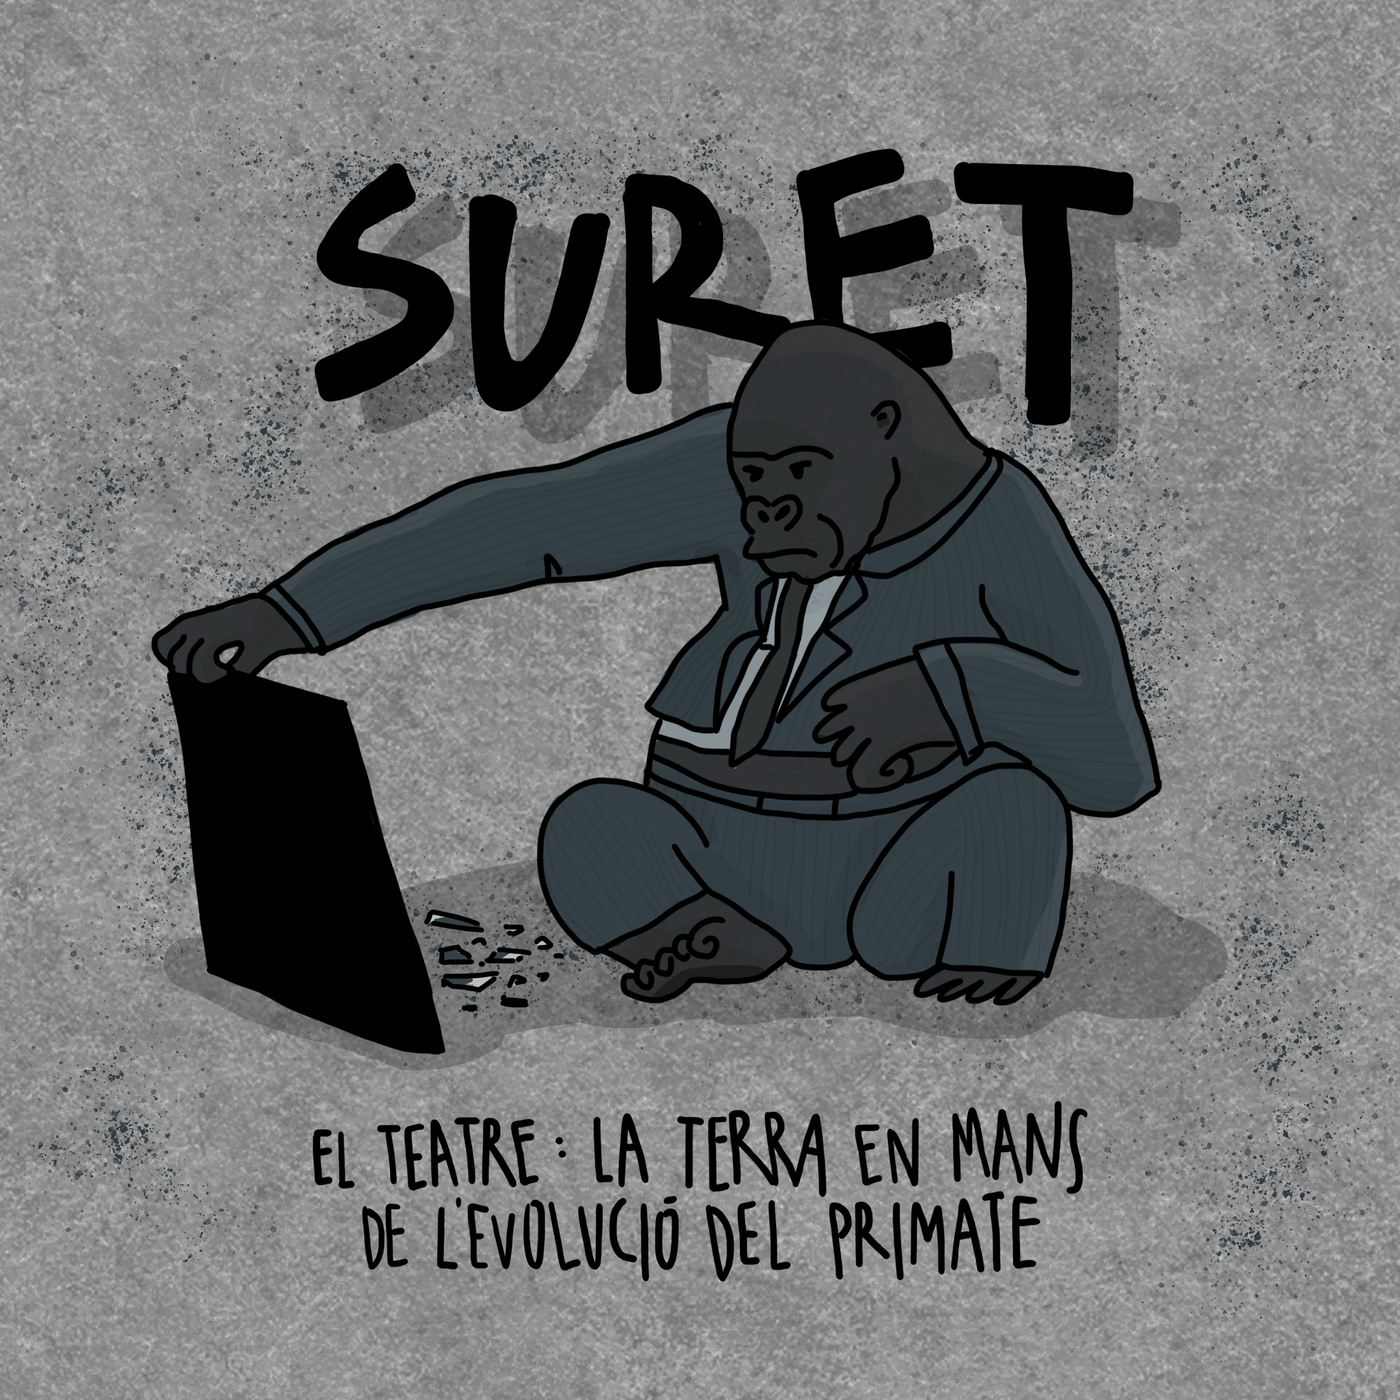 Suret - El teatre: La Terra en mans de l'evolució del primate | musica en valencià